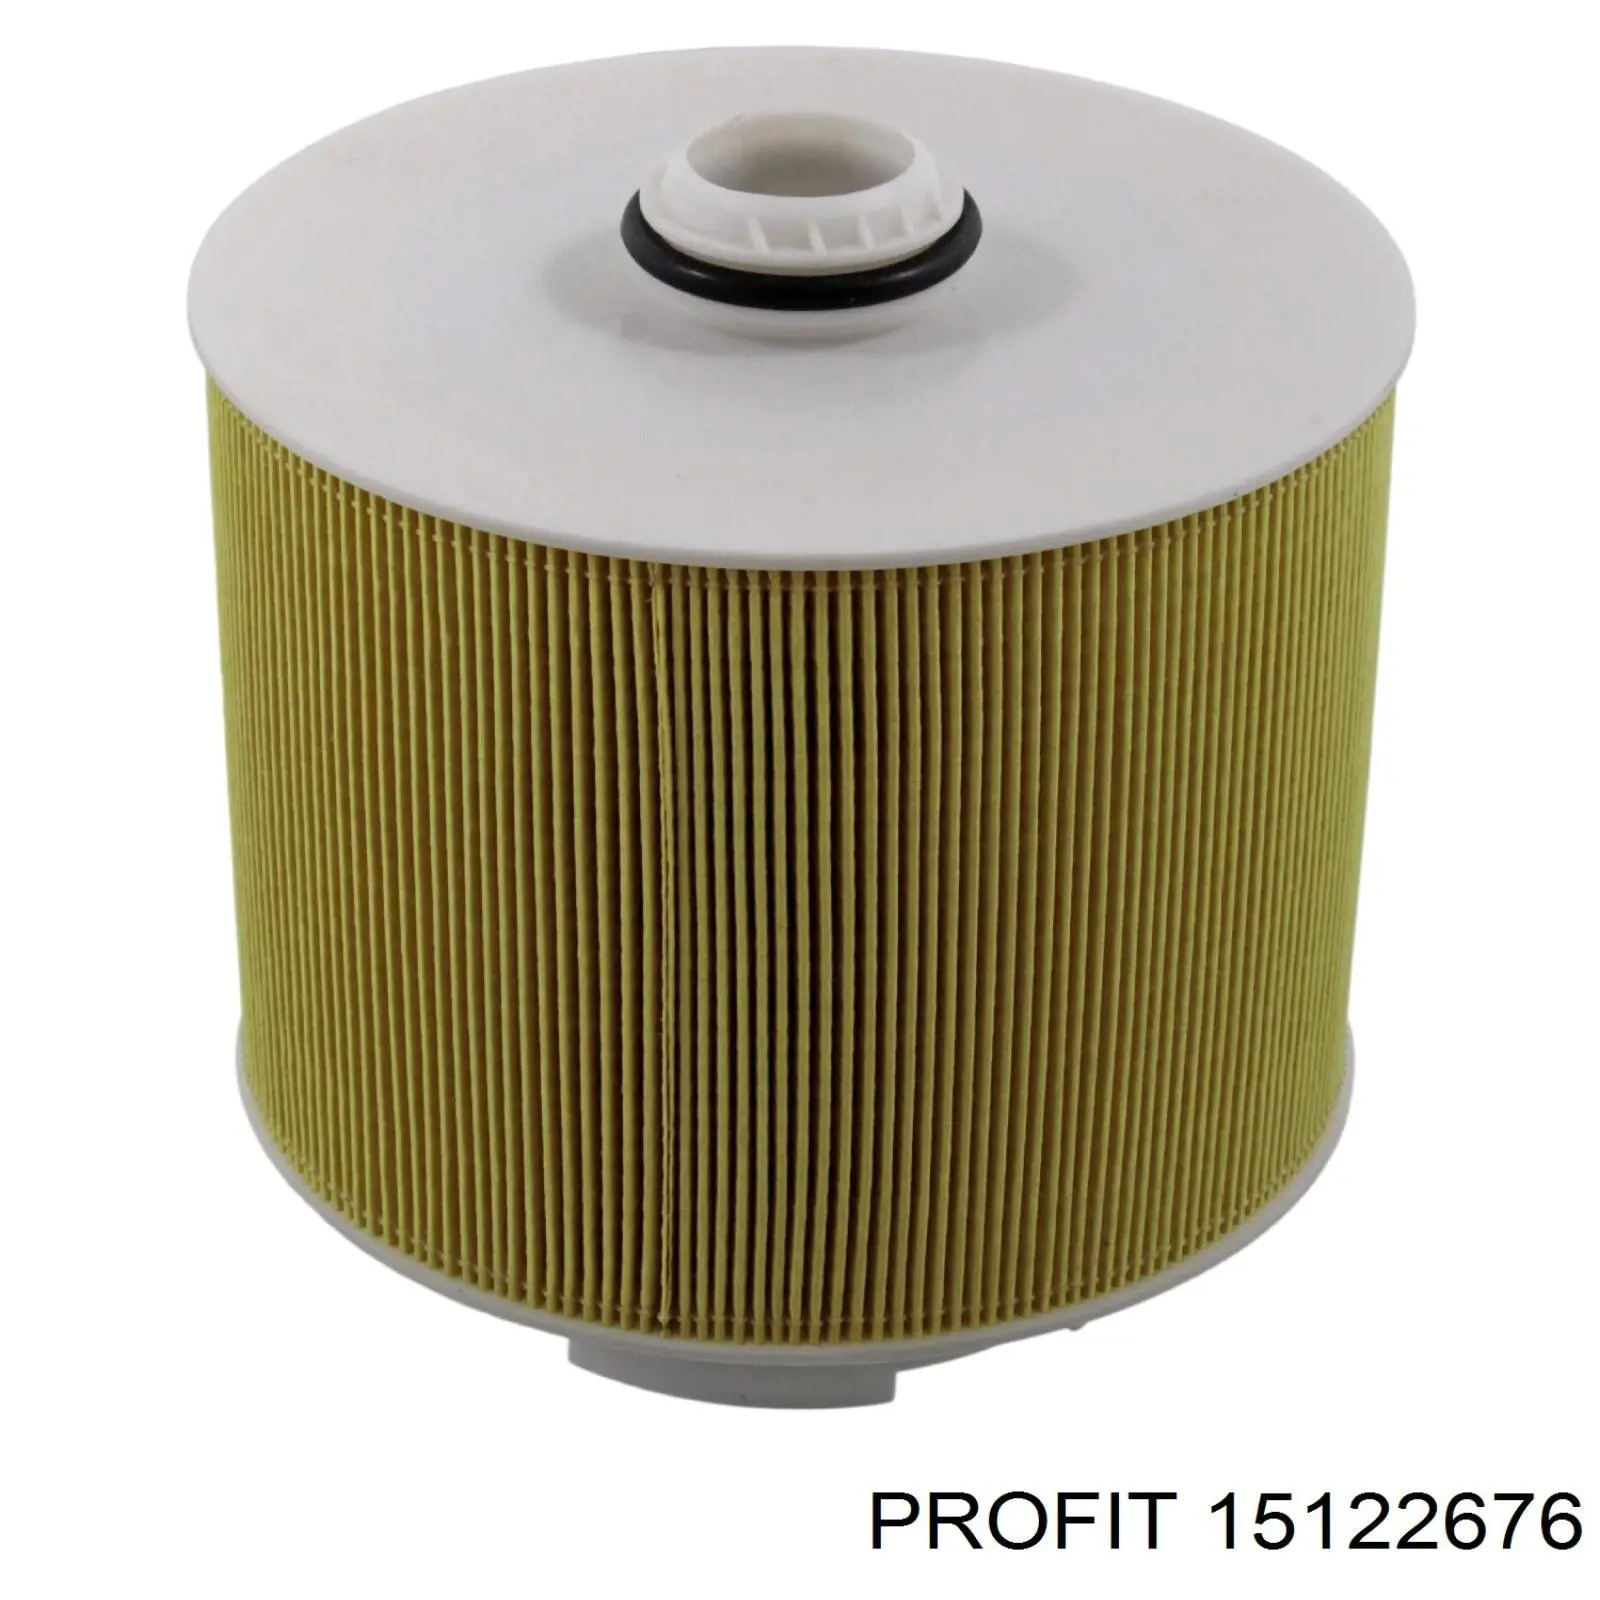 15122676 Profit filtro de aire